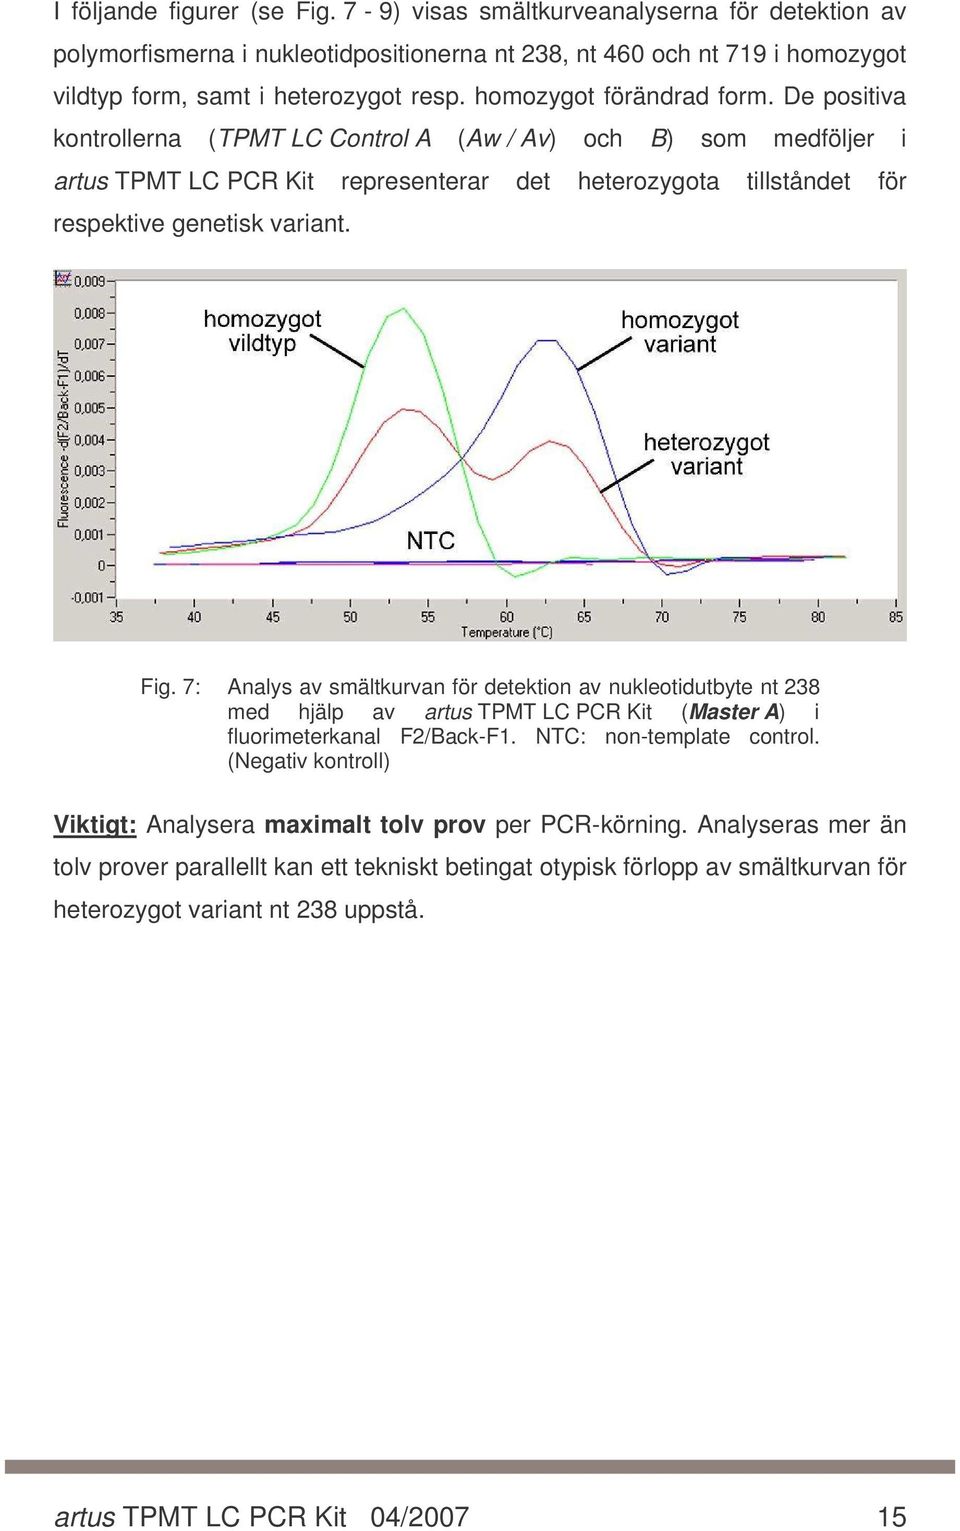 Fig. 7: Analys av smältkurvan för detektion av nukleotidutbyte nt 238 med hjälp av artus TPMT LC PCR Kit (Master A) i fluorimeterkanal F2/Back-F1. NTC: non-template control.